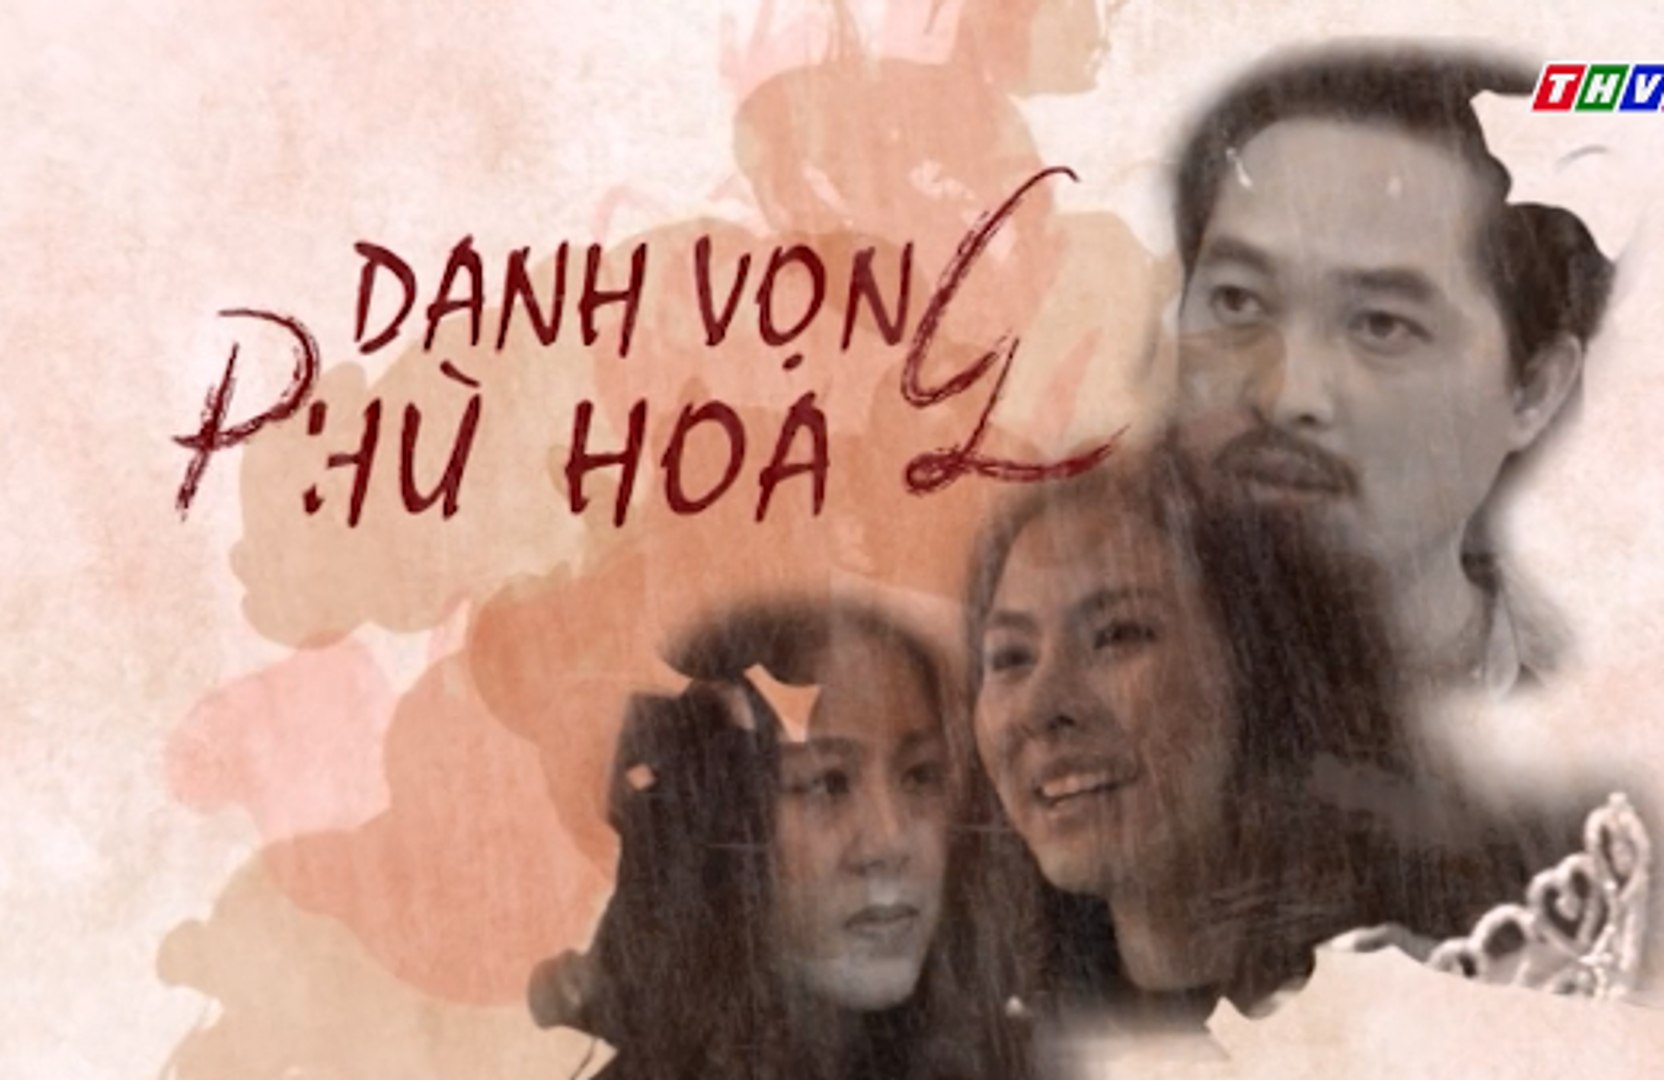 Danh vọng phù hoa Tập 18 - Phim Việt Nam